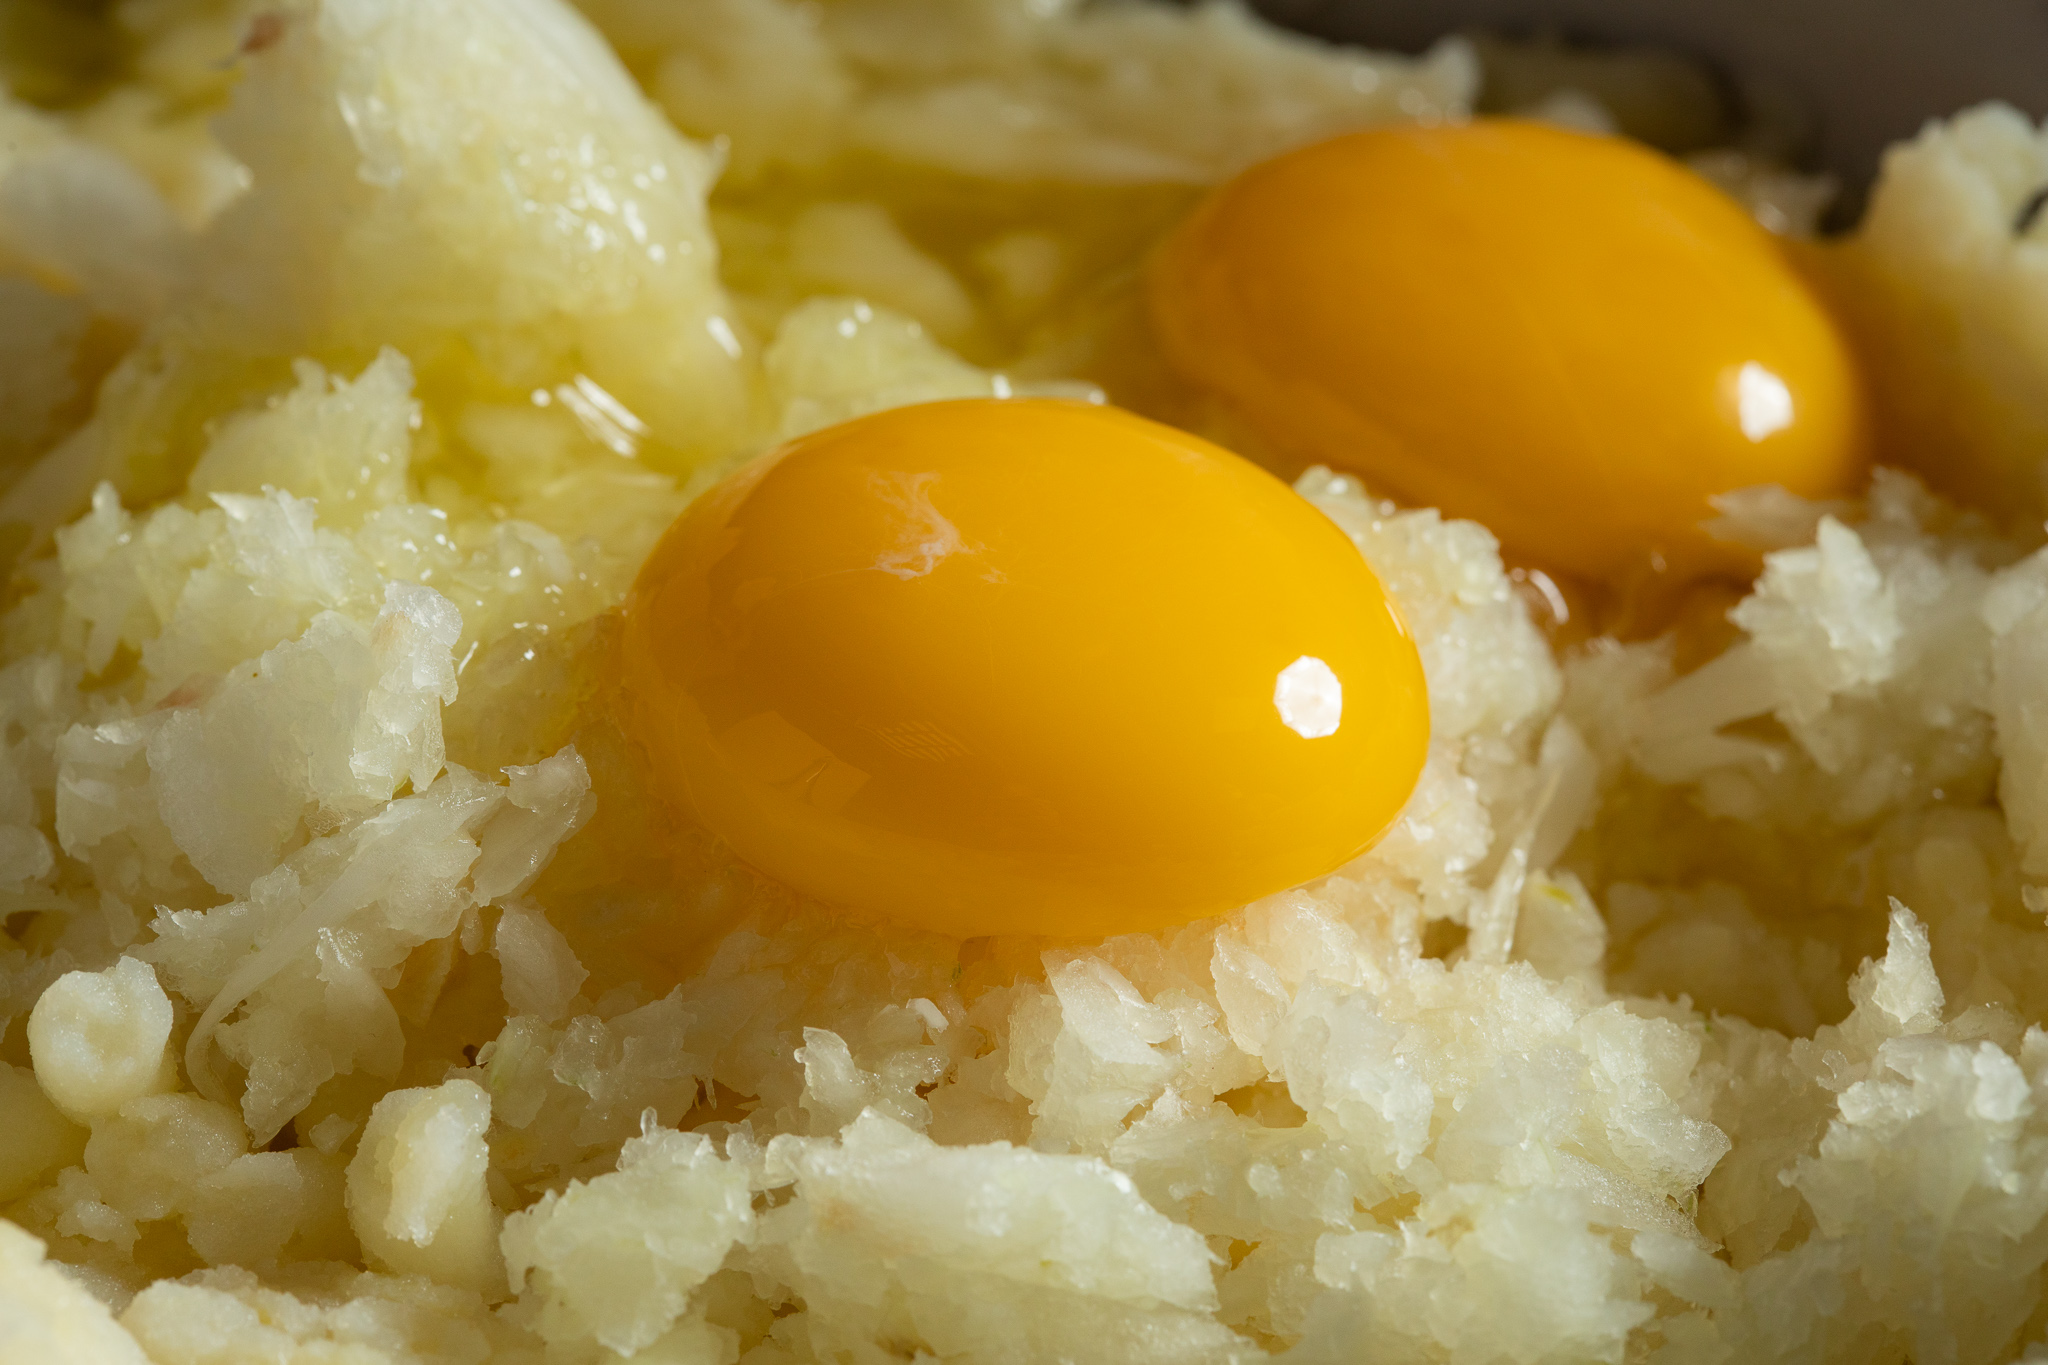 מוסיפים לקערת הפירה את הבצל, הפטרוזיליה, הביצים. צילום: שניר גואטה